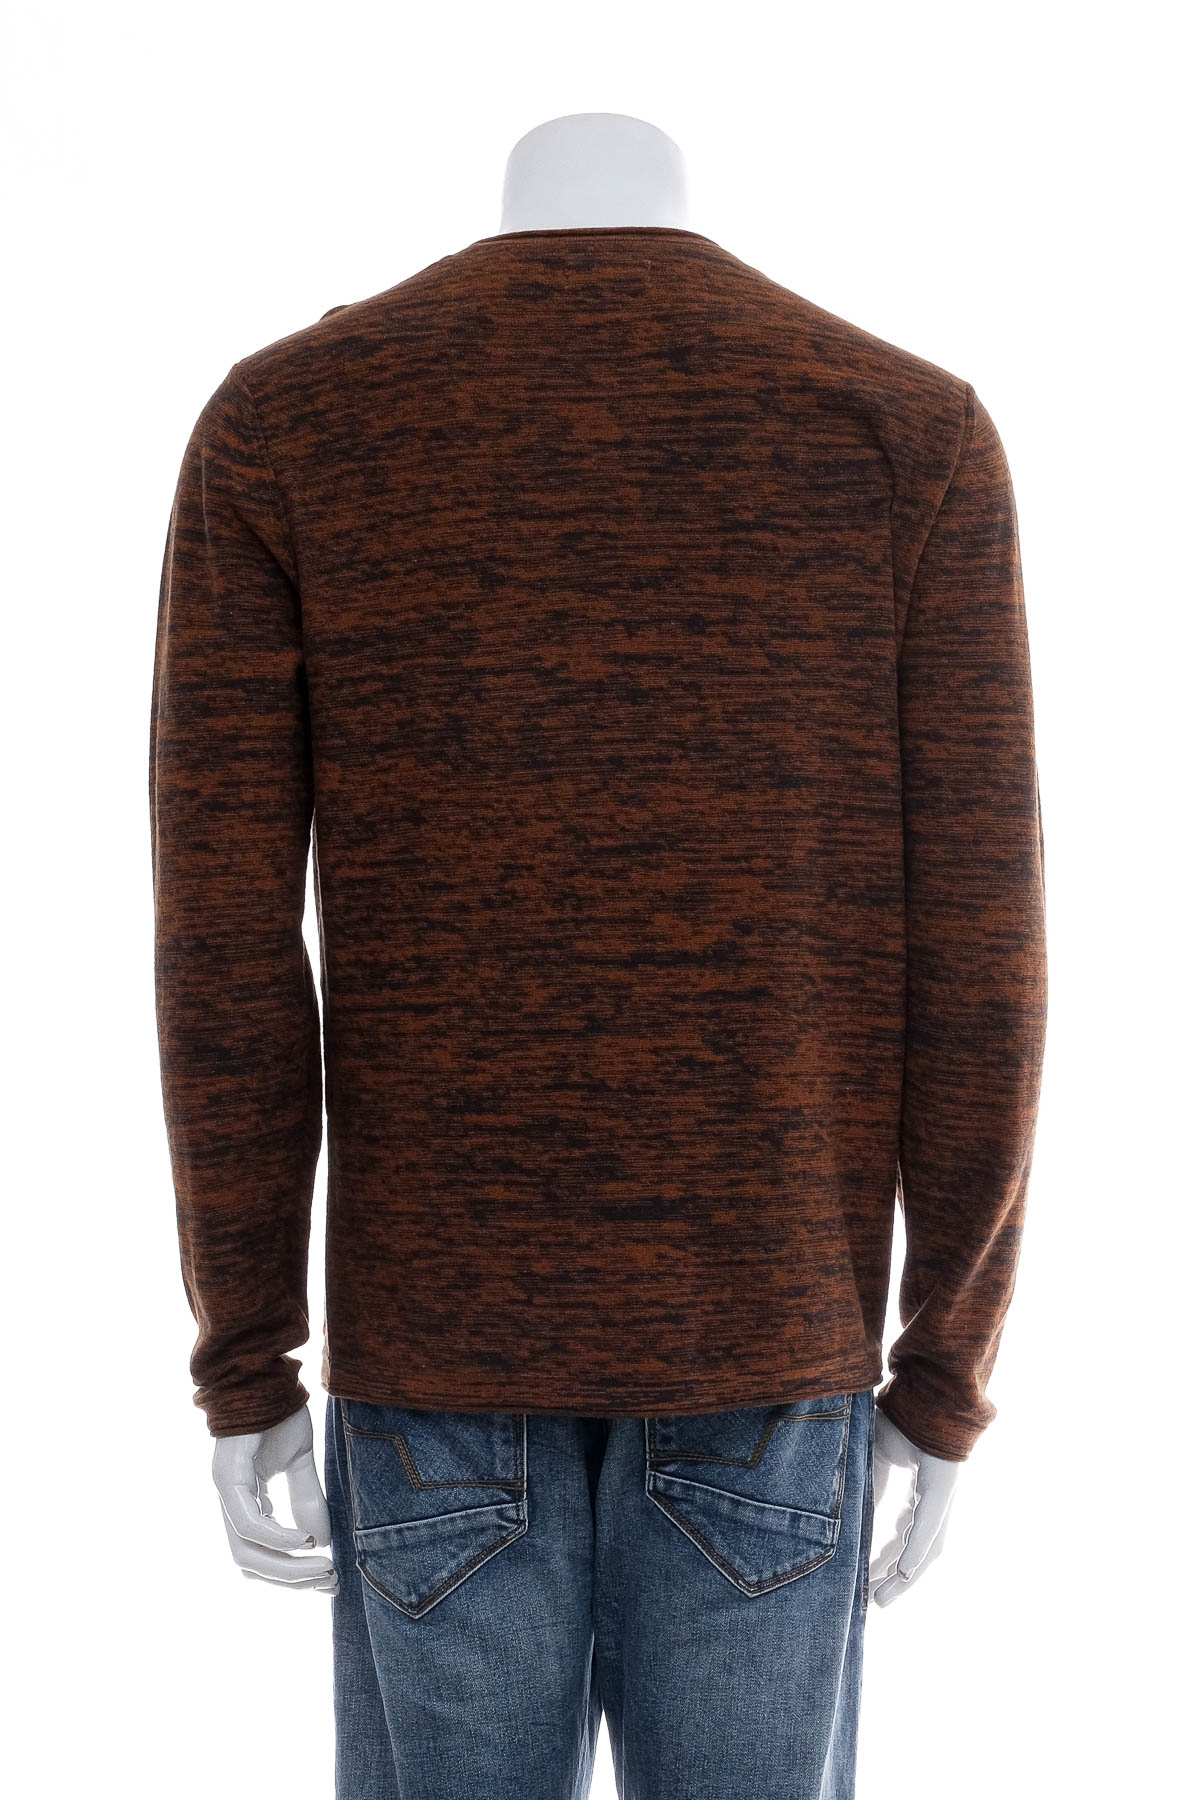 Men's sweater - Manguun - 1